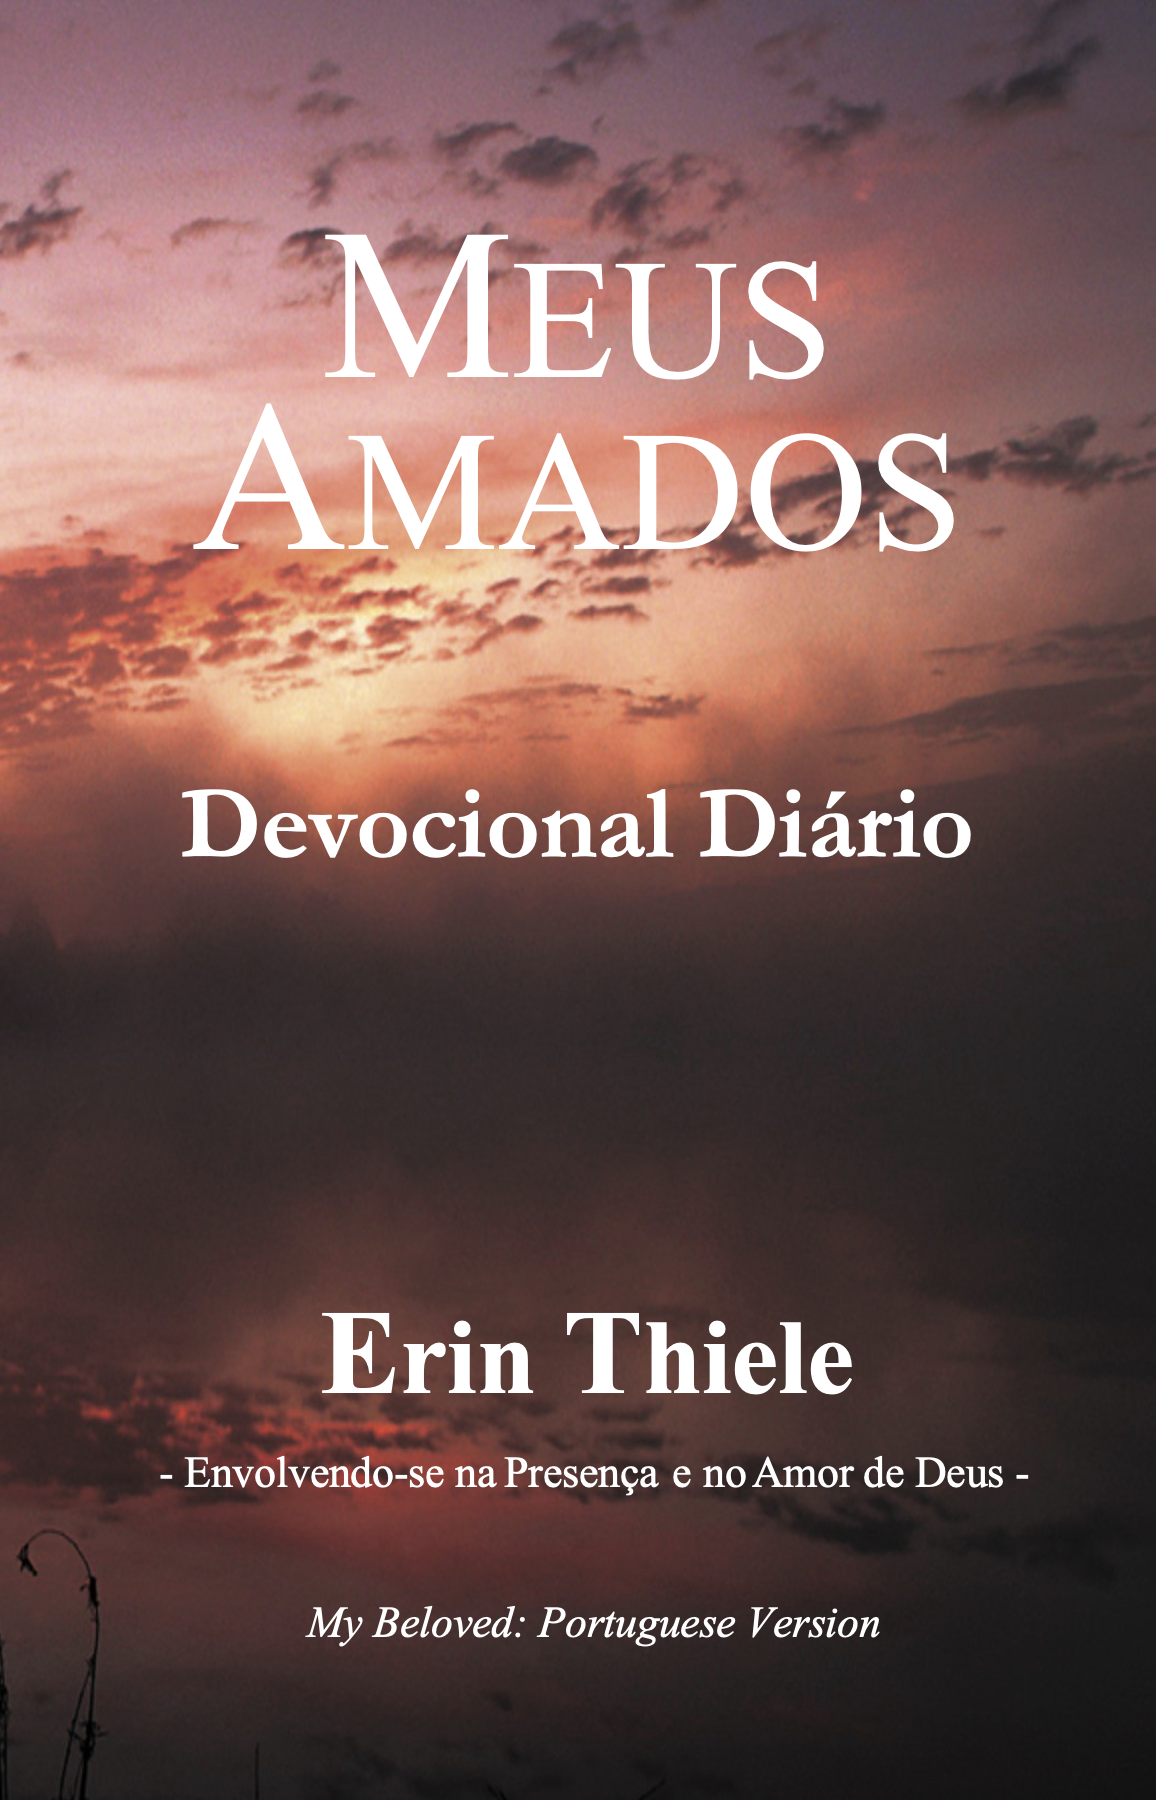 Meus Amados: Devocionais Diárias Para Restauração de Relacionamentos (Portuguese Edition)